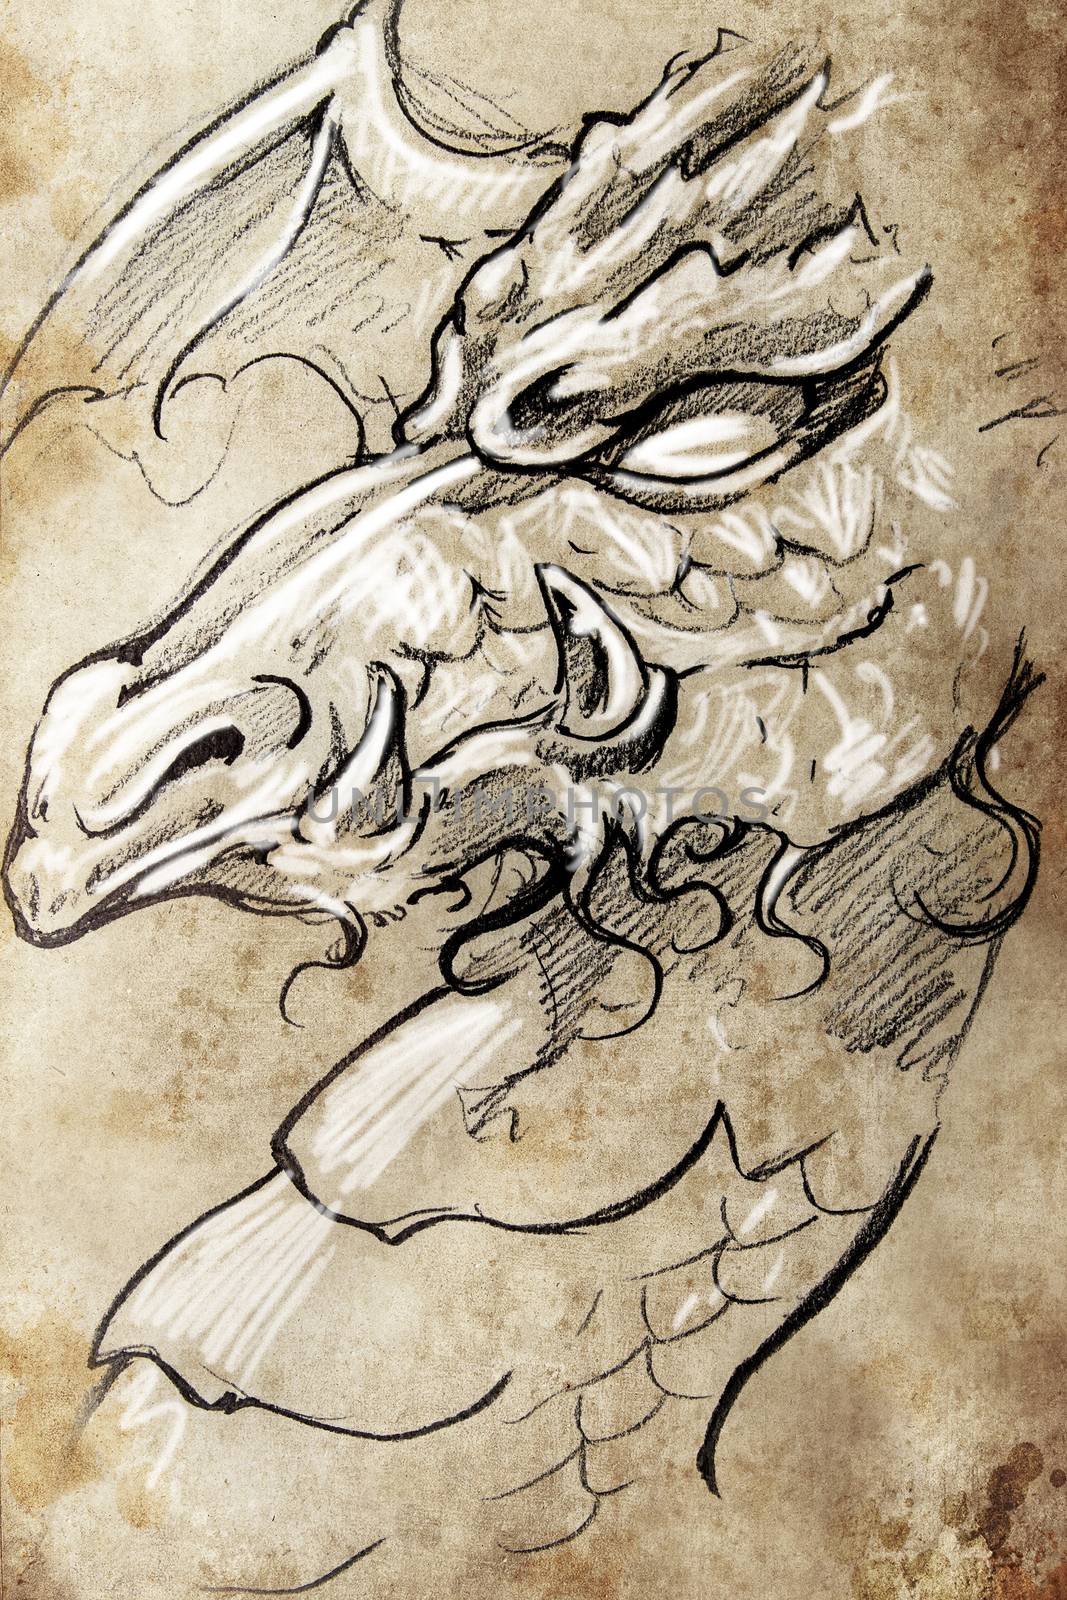 Dragon, Tattoo sketch, handmade design over vintage paper by FernandoCortes